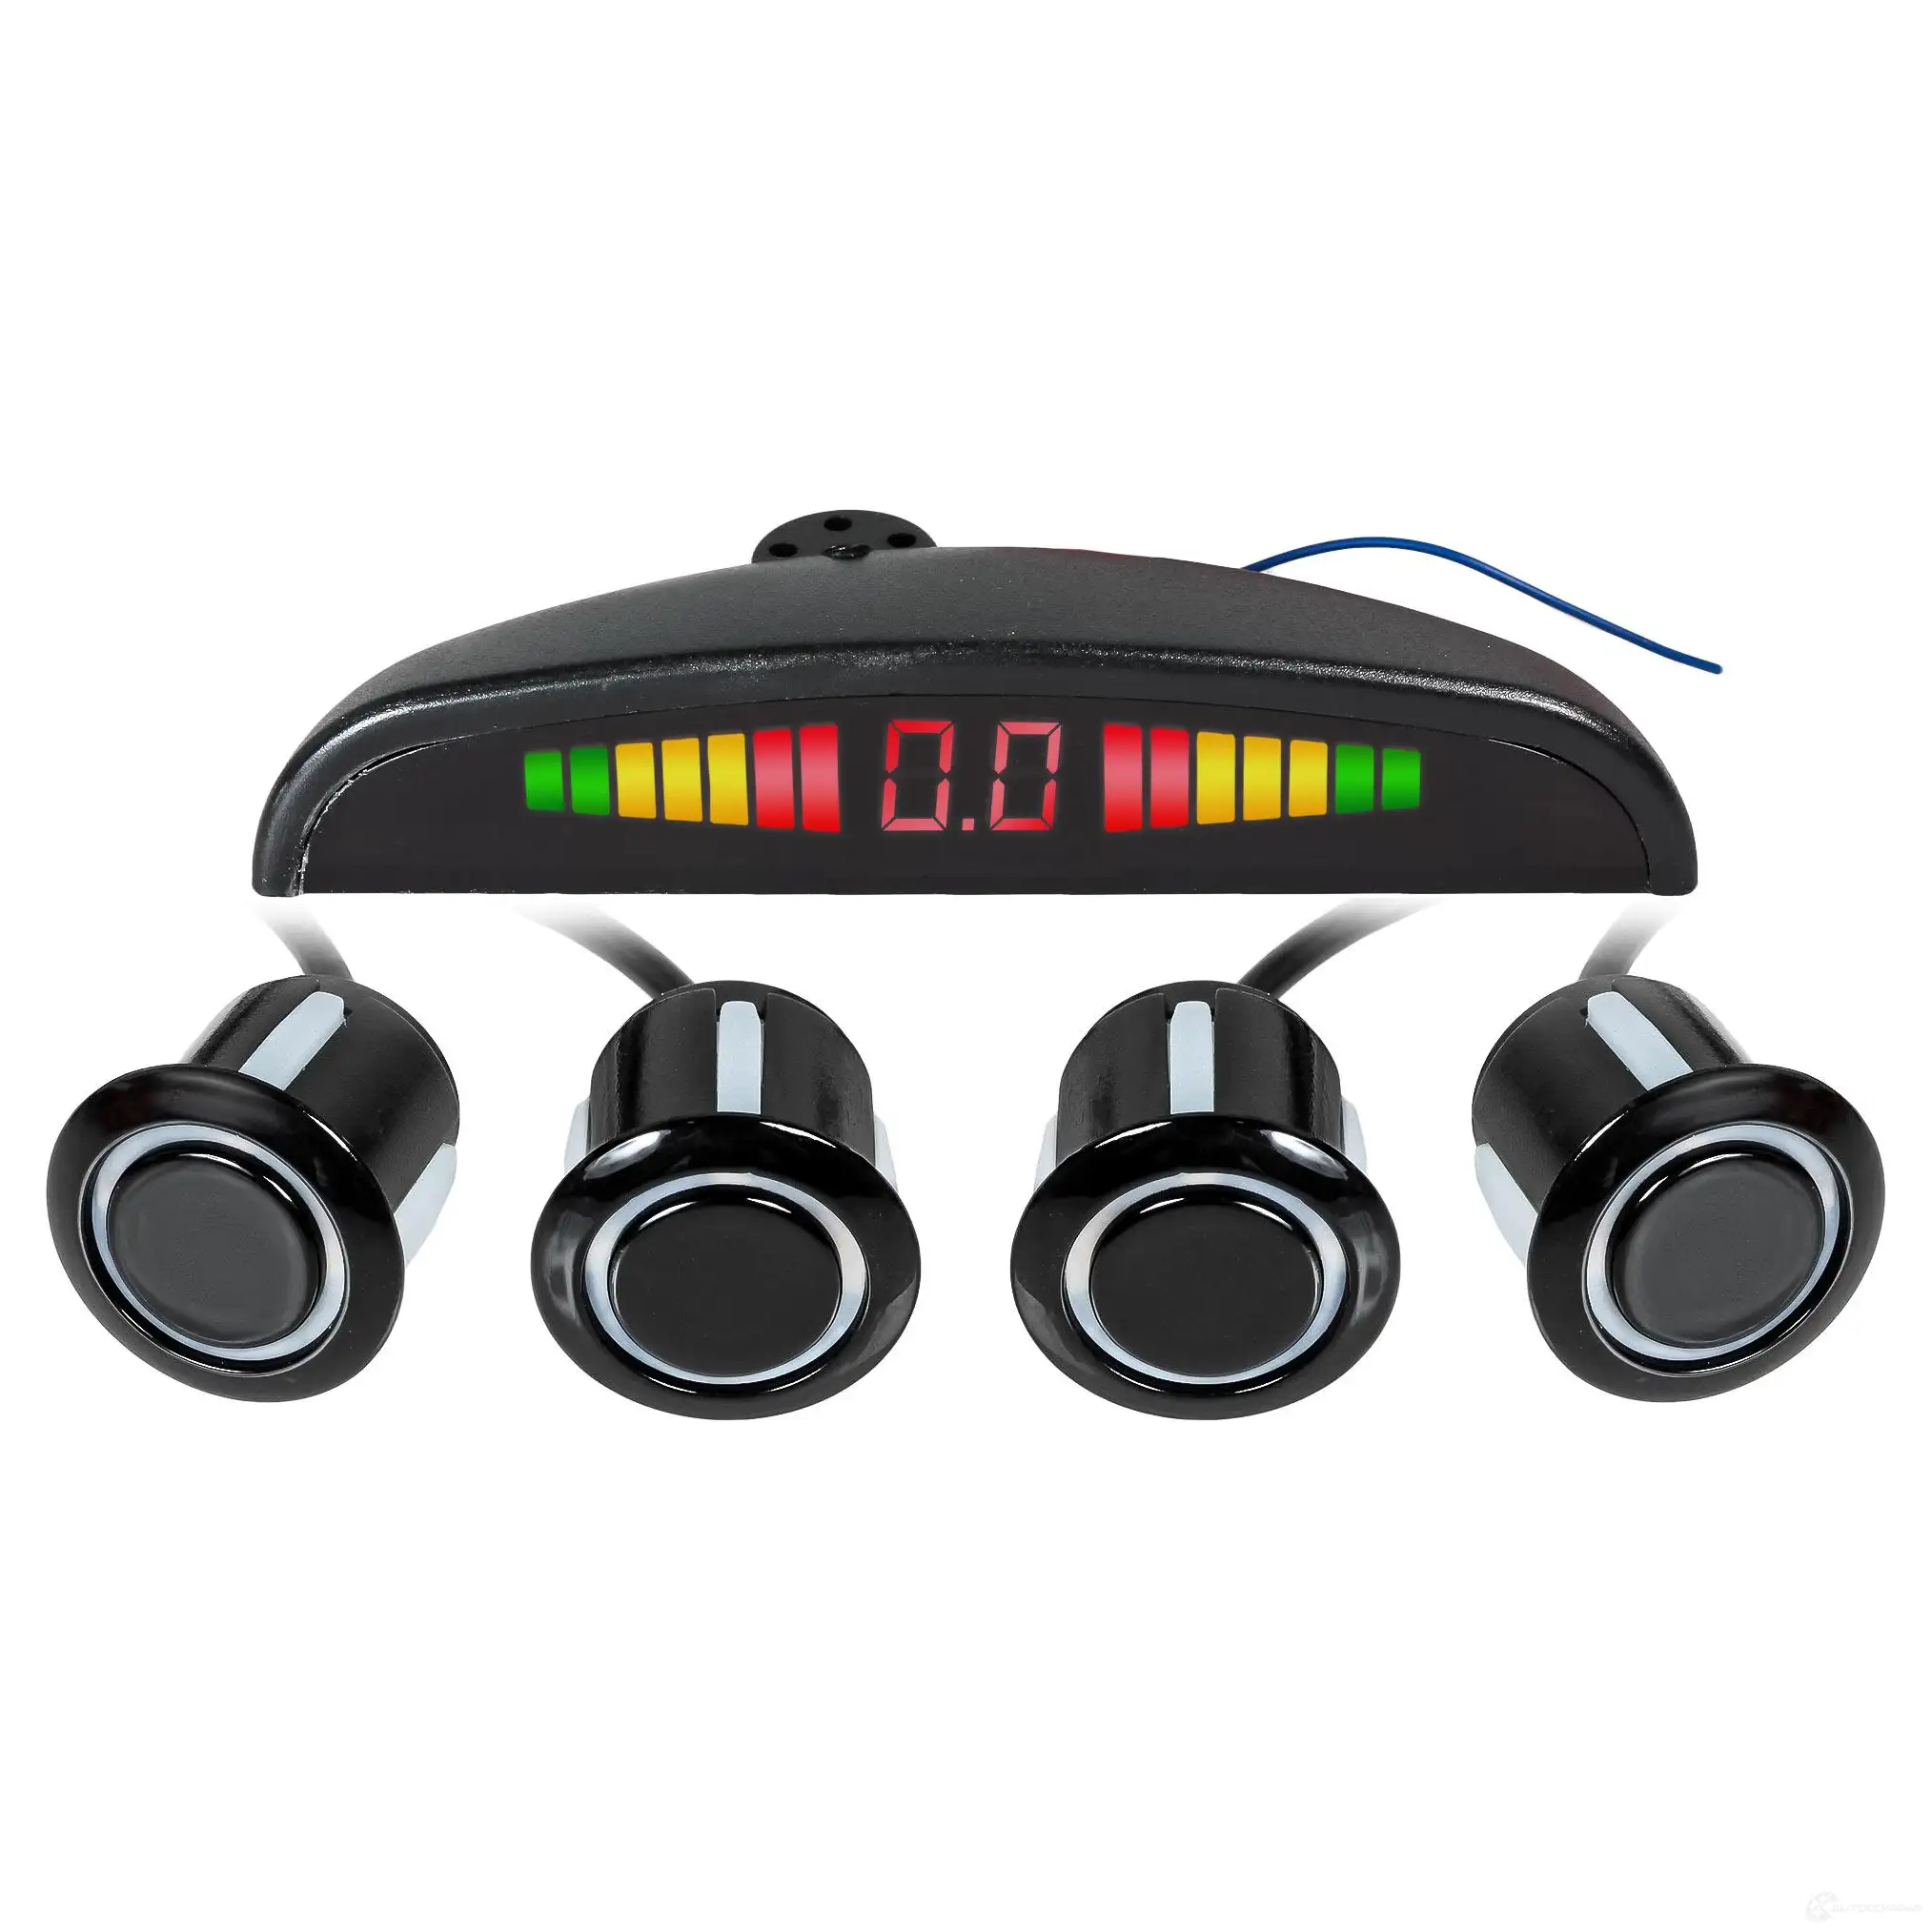 Парктроник на 4 датчика (черные), беспроводной LED дисплей AIRLINE UBEUQ 0 1438171408 apswl04 изображение 1